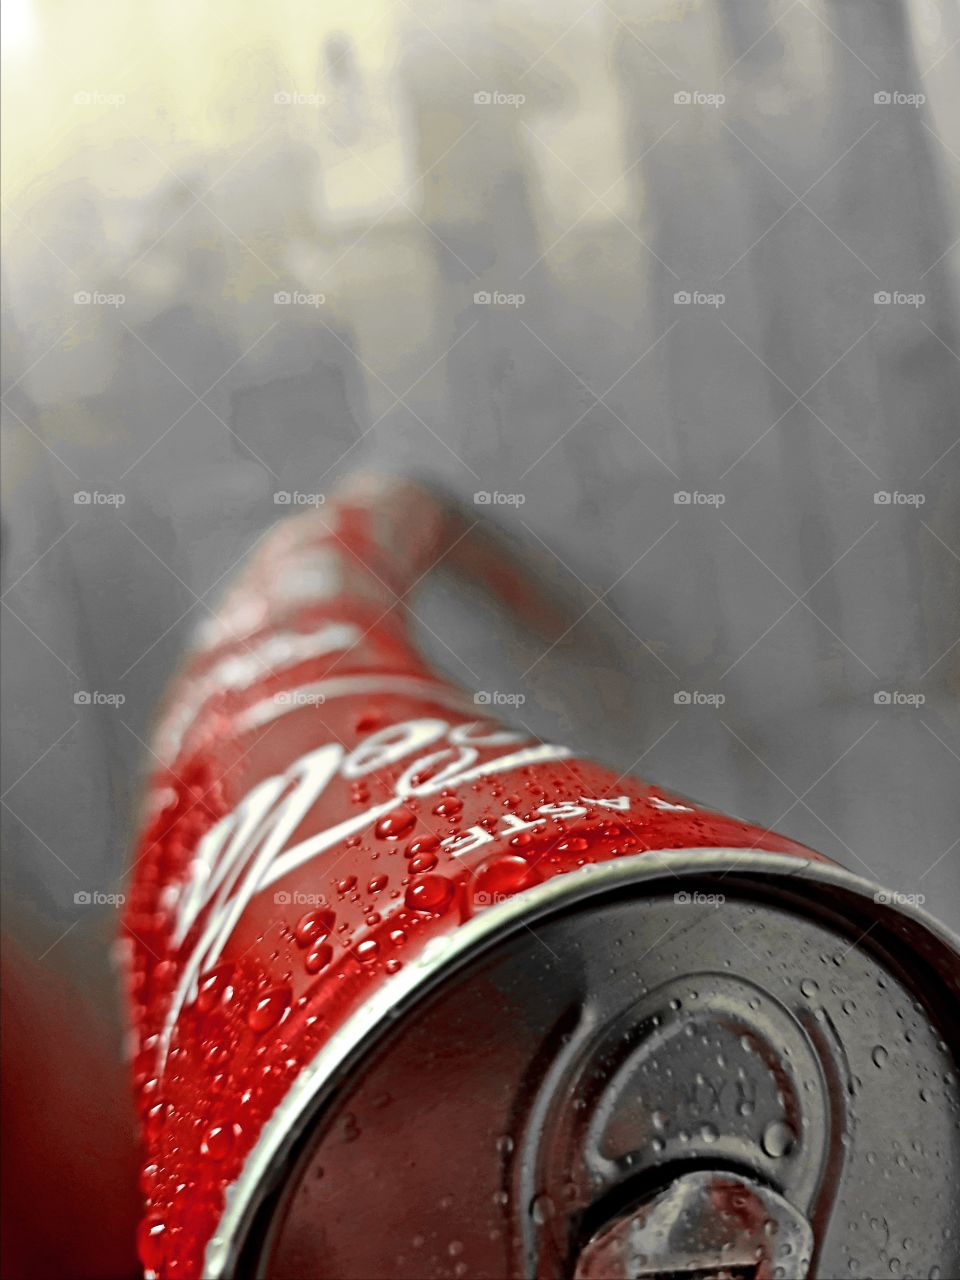 Coke after Coke